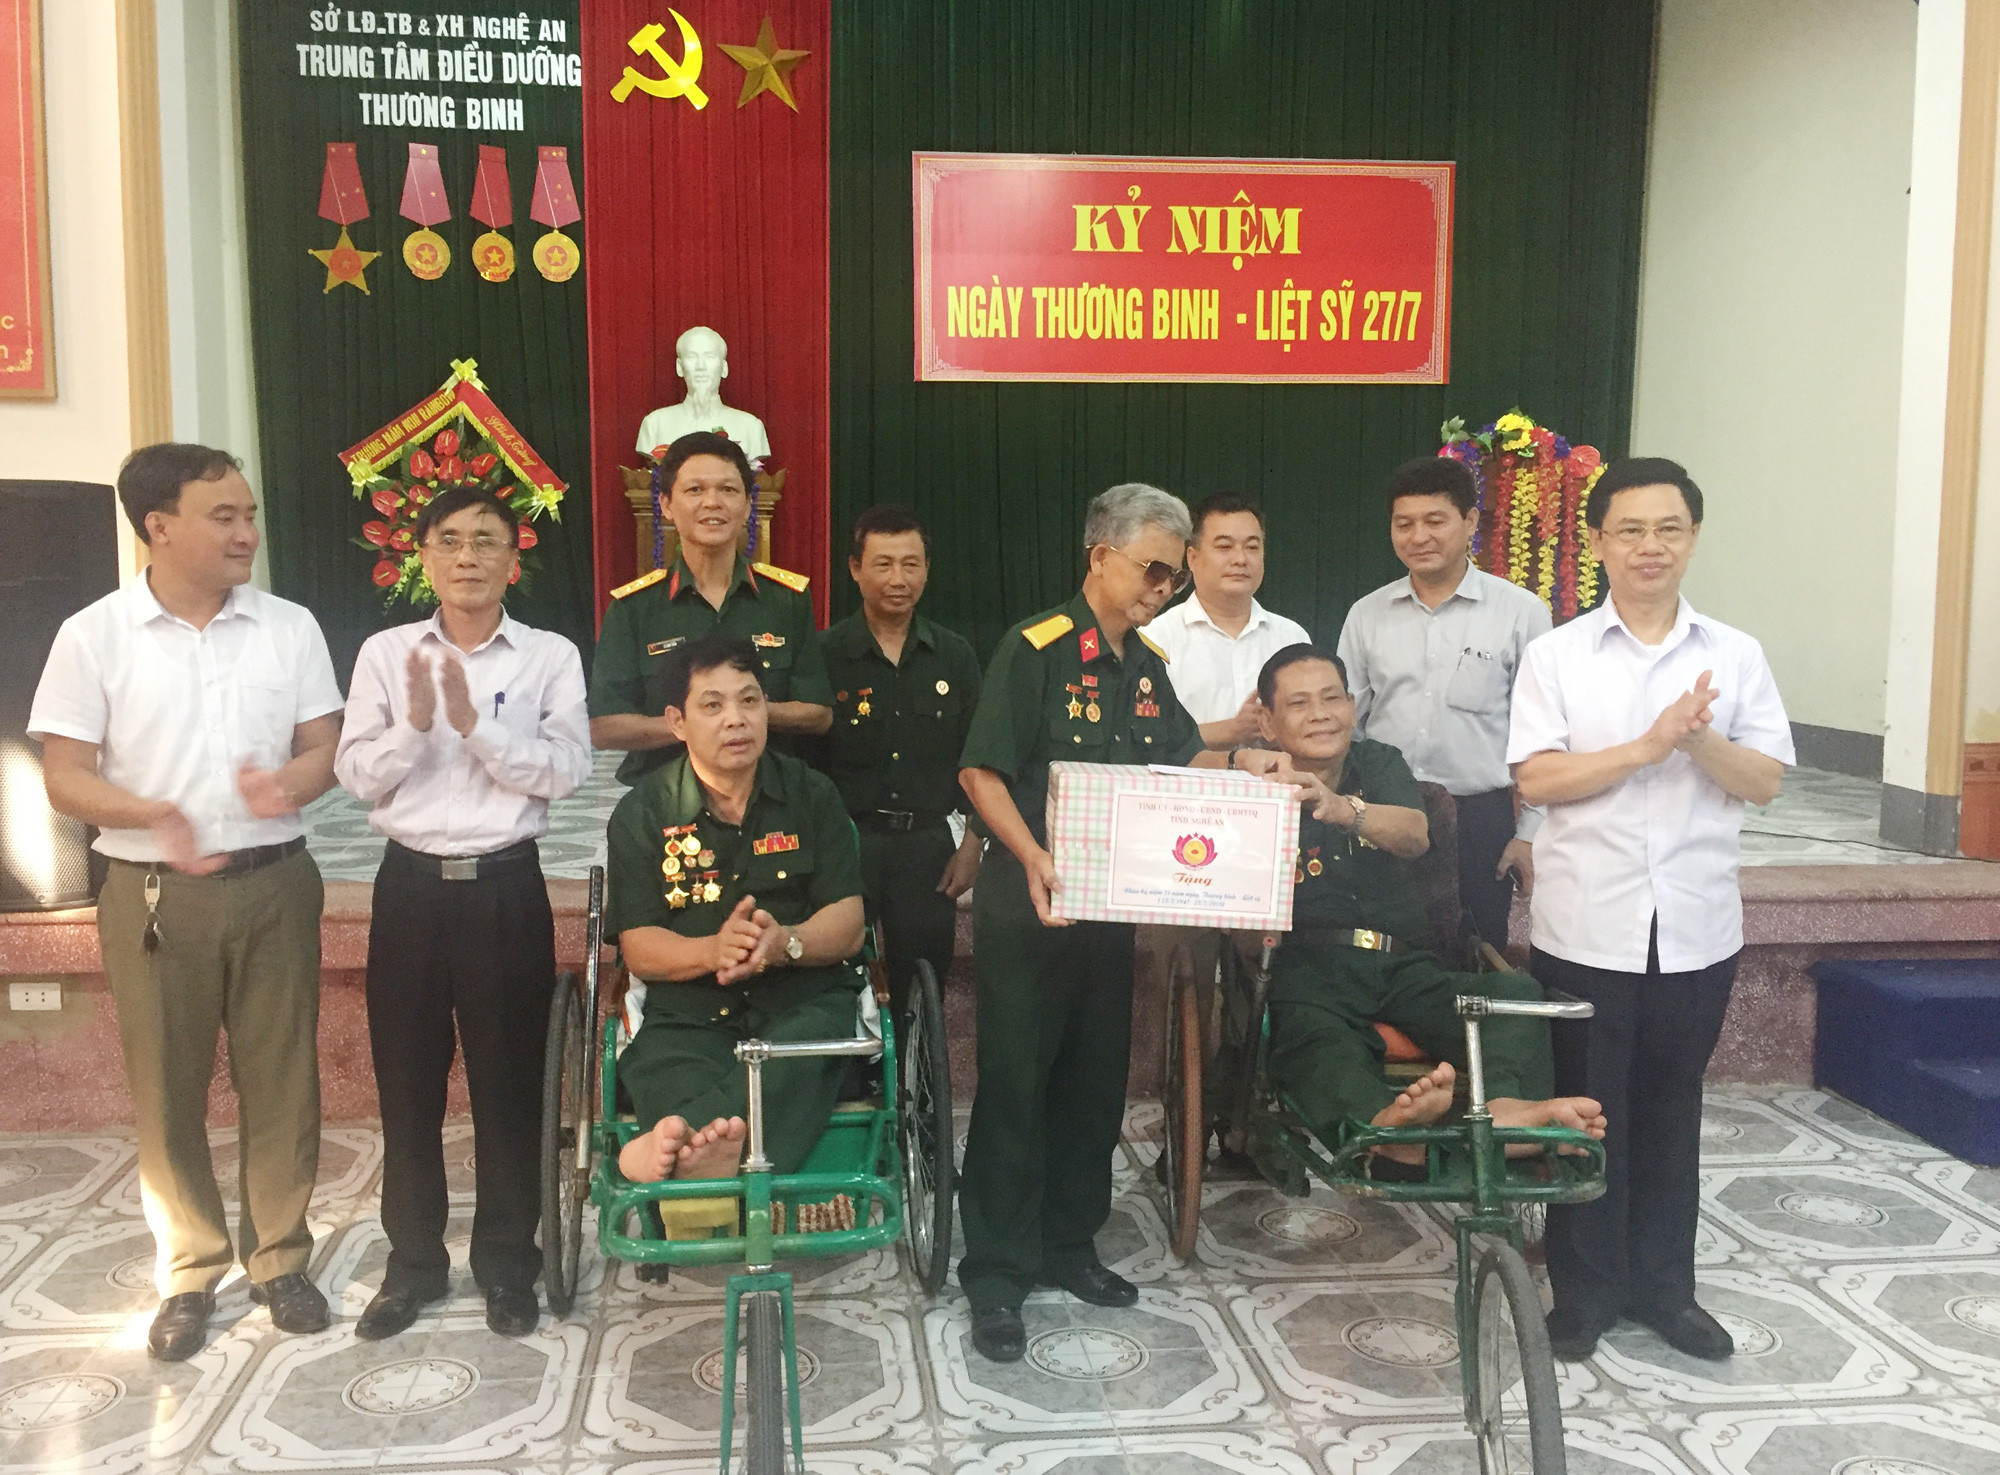 Đồng chí Nguyễn Xuân Sơn và lãnh đạo Văn phòng Tỉnh ủy, Sở LĐ, TB&XH, Bộ Chỉ huy Quân sự tỉnh thăm hỏi, tặng quà các thương binh nặng tại Trung tâm thương binh nặng Nghệ An, 